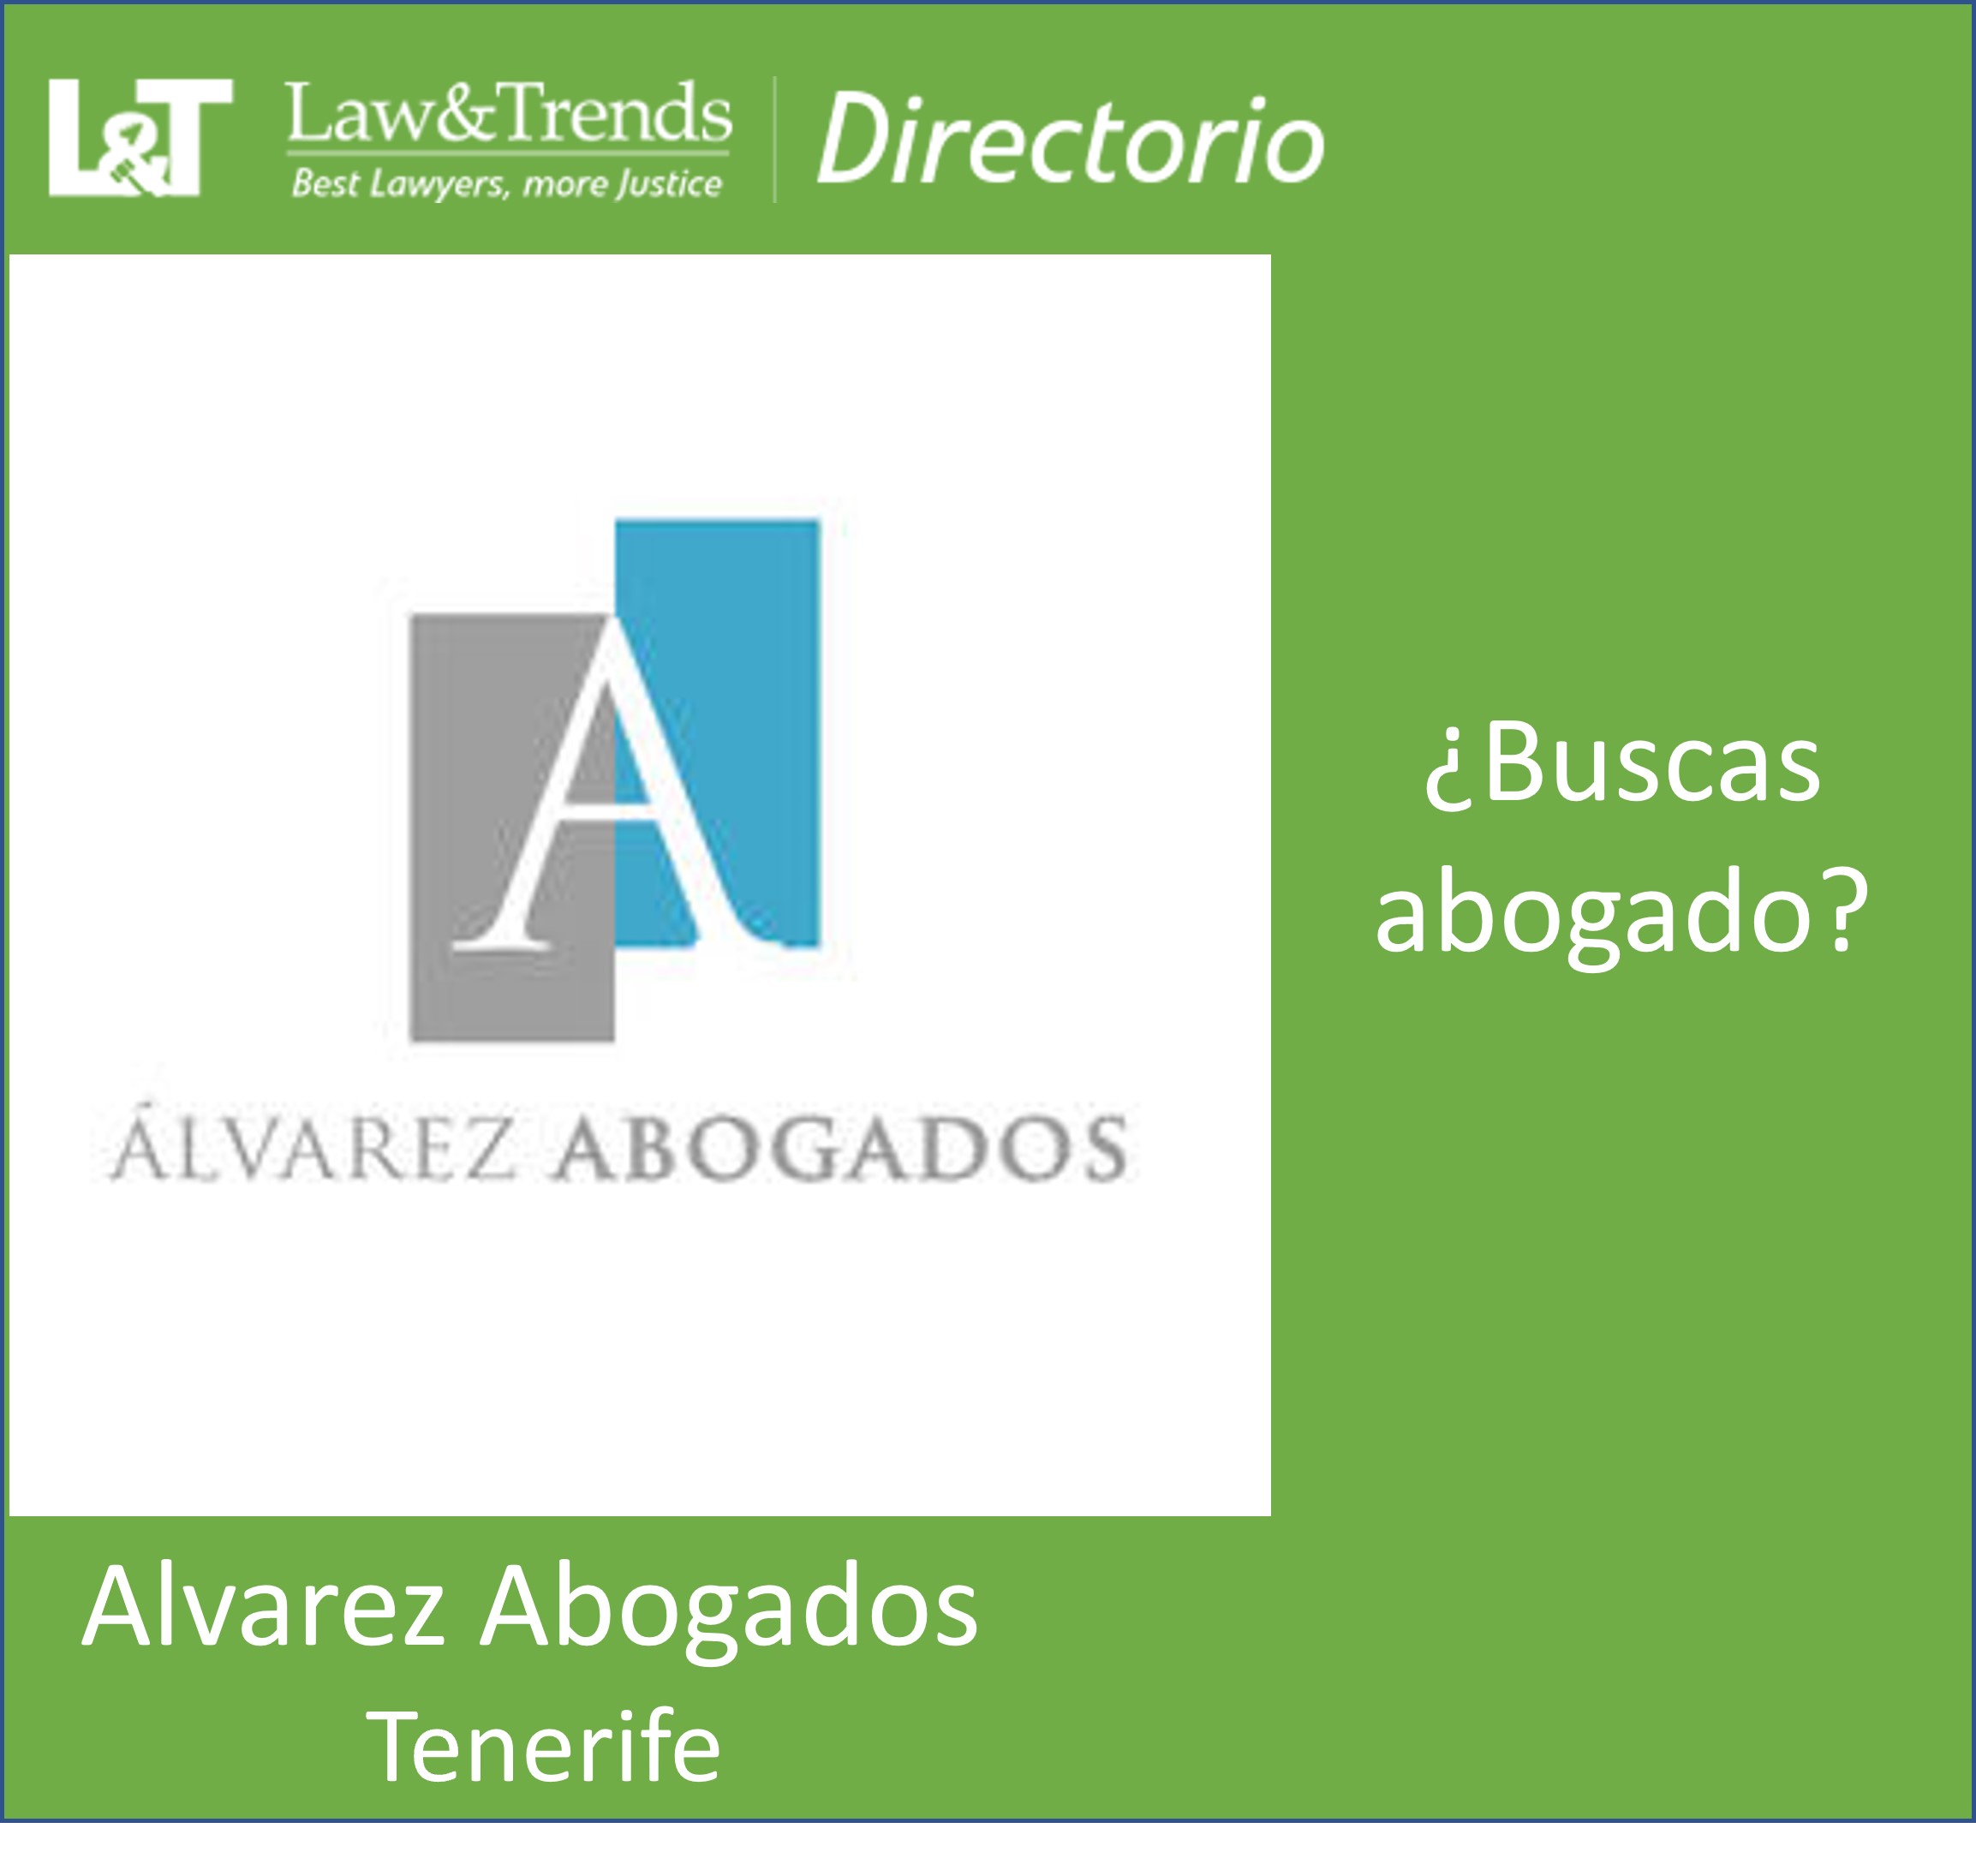 Alvarez abogados Tenerife
